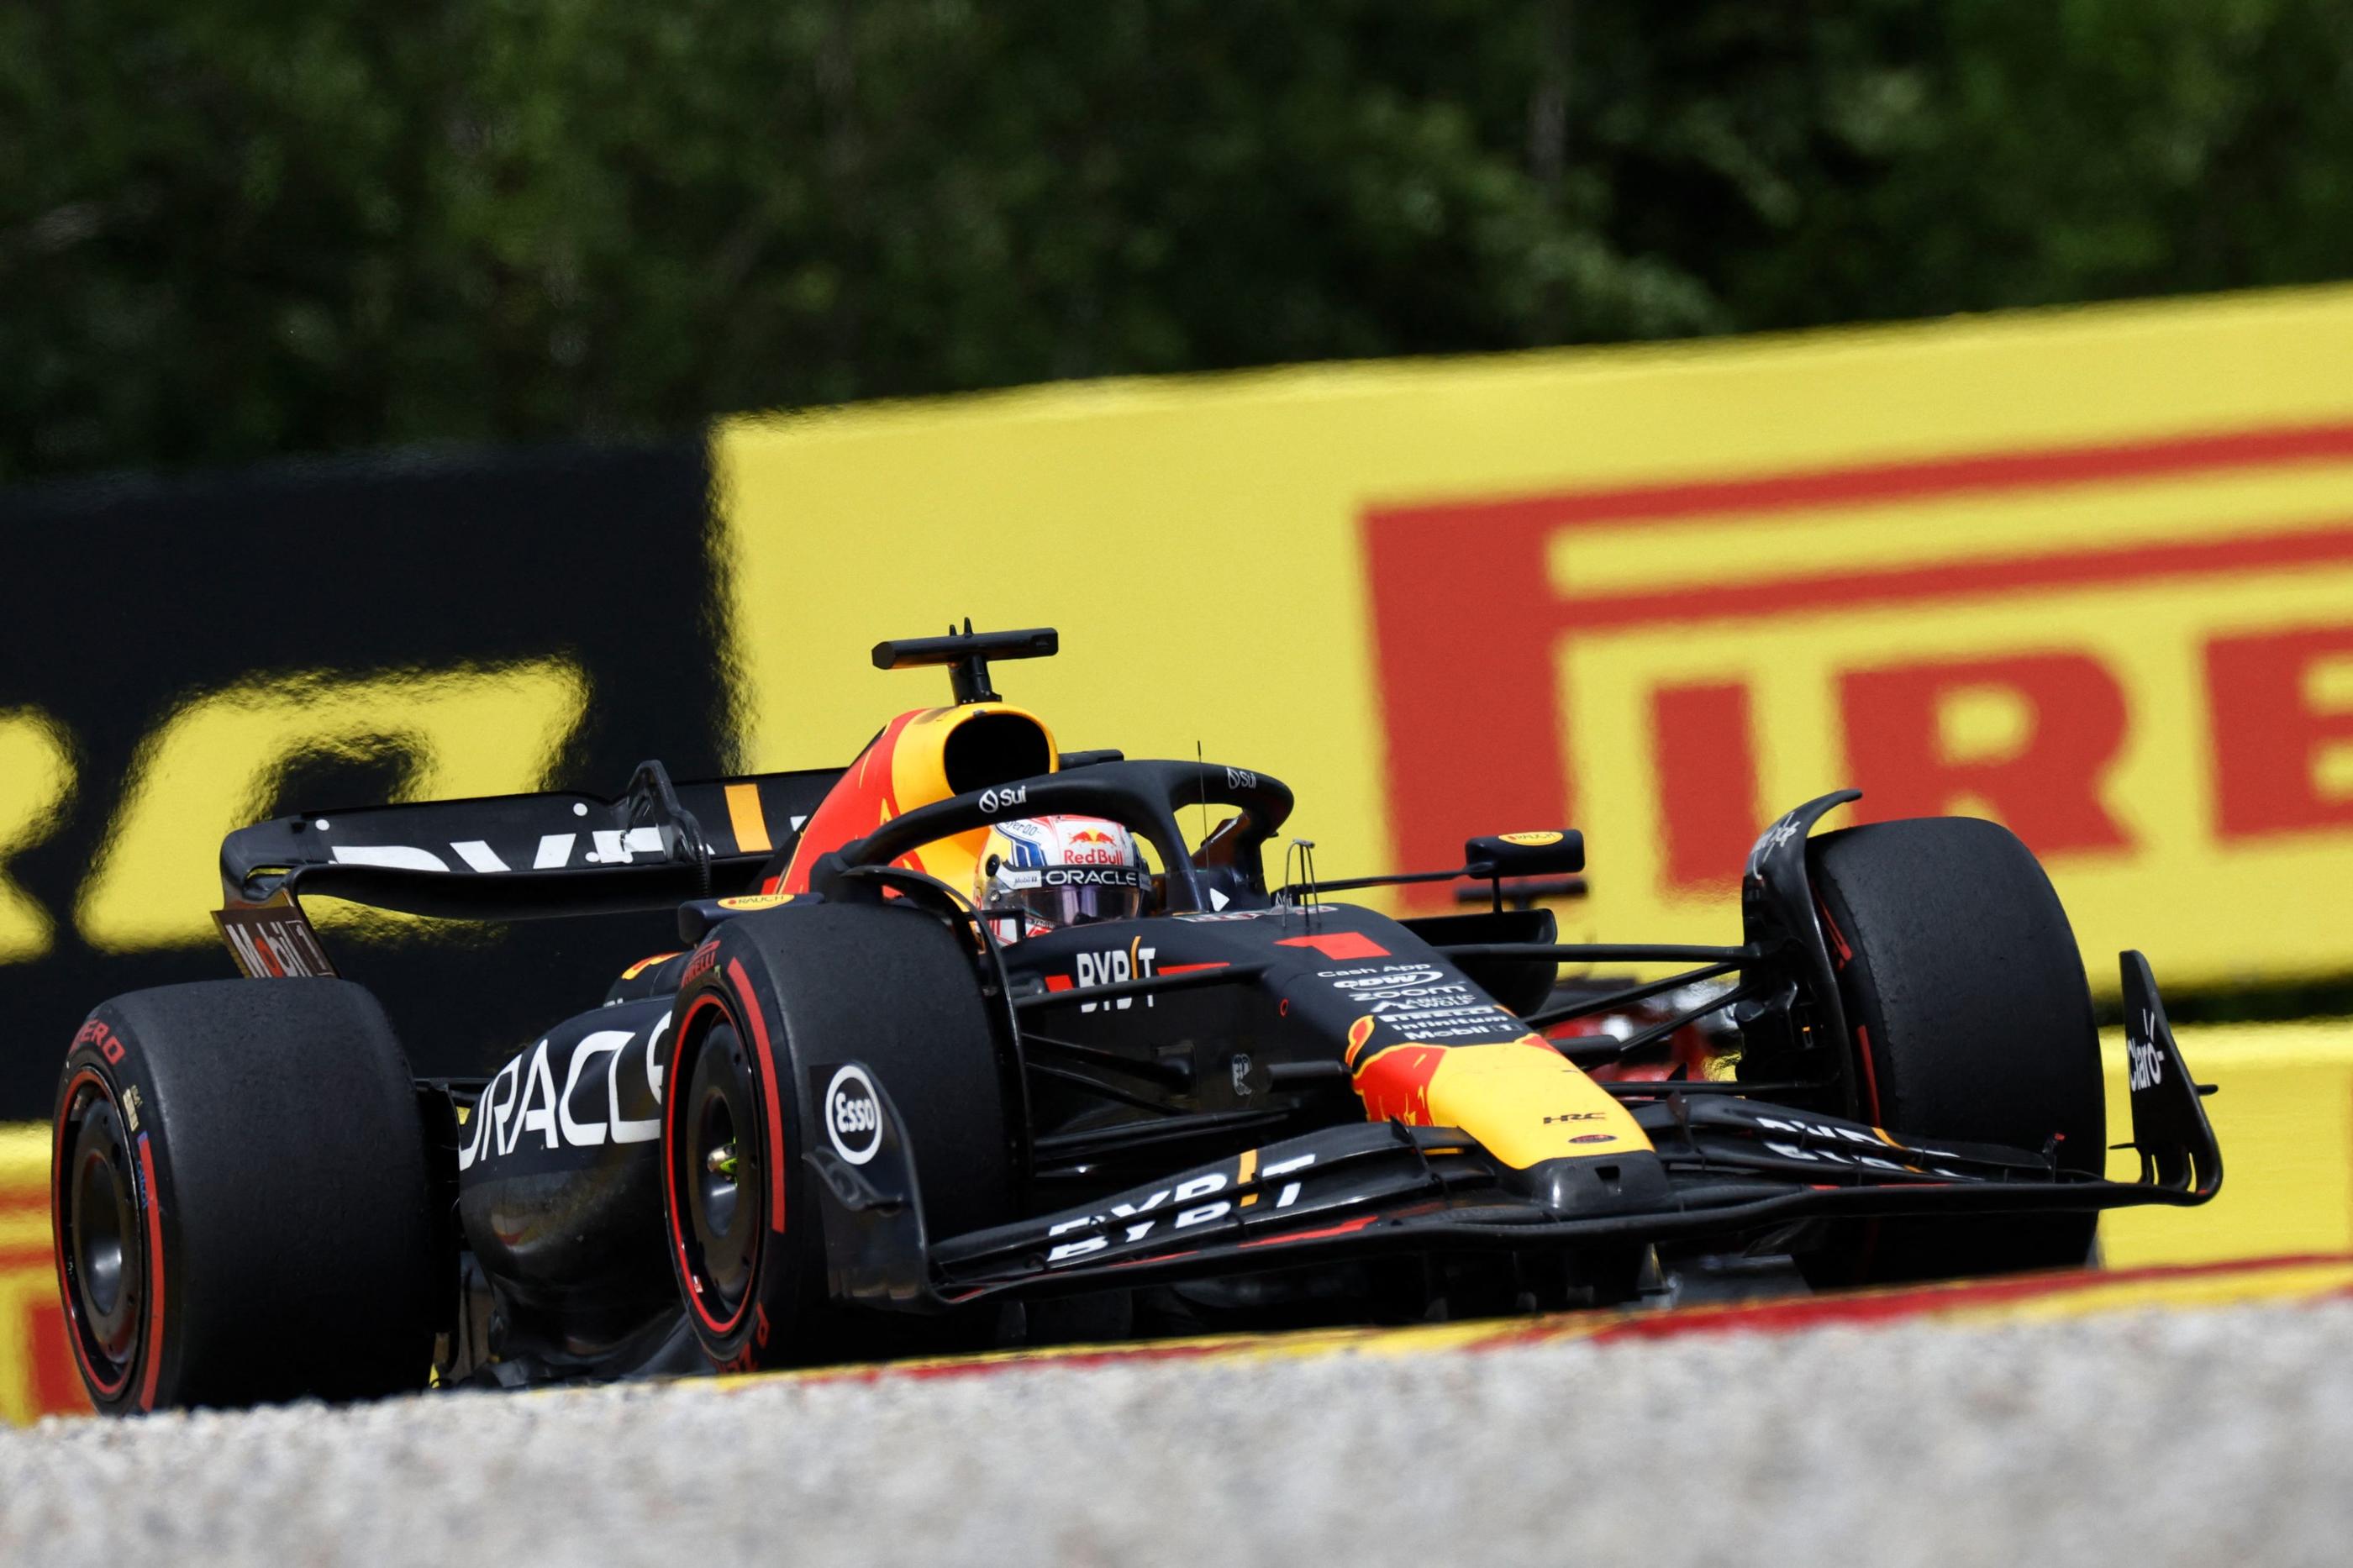 Max Verstappen a remporté le Grand Prix de Spa-Francorchamps pour la troisième fois d'affilée. (Photo by KENZO TRIBOUILLARD / AFP)